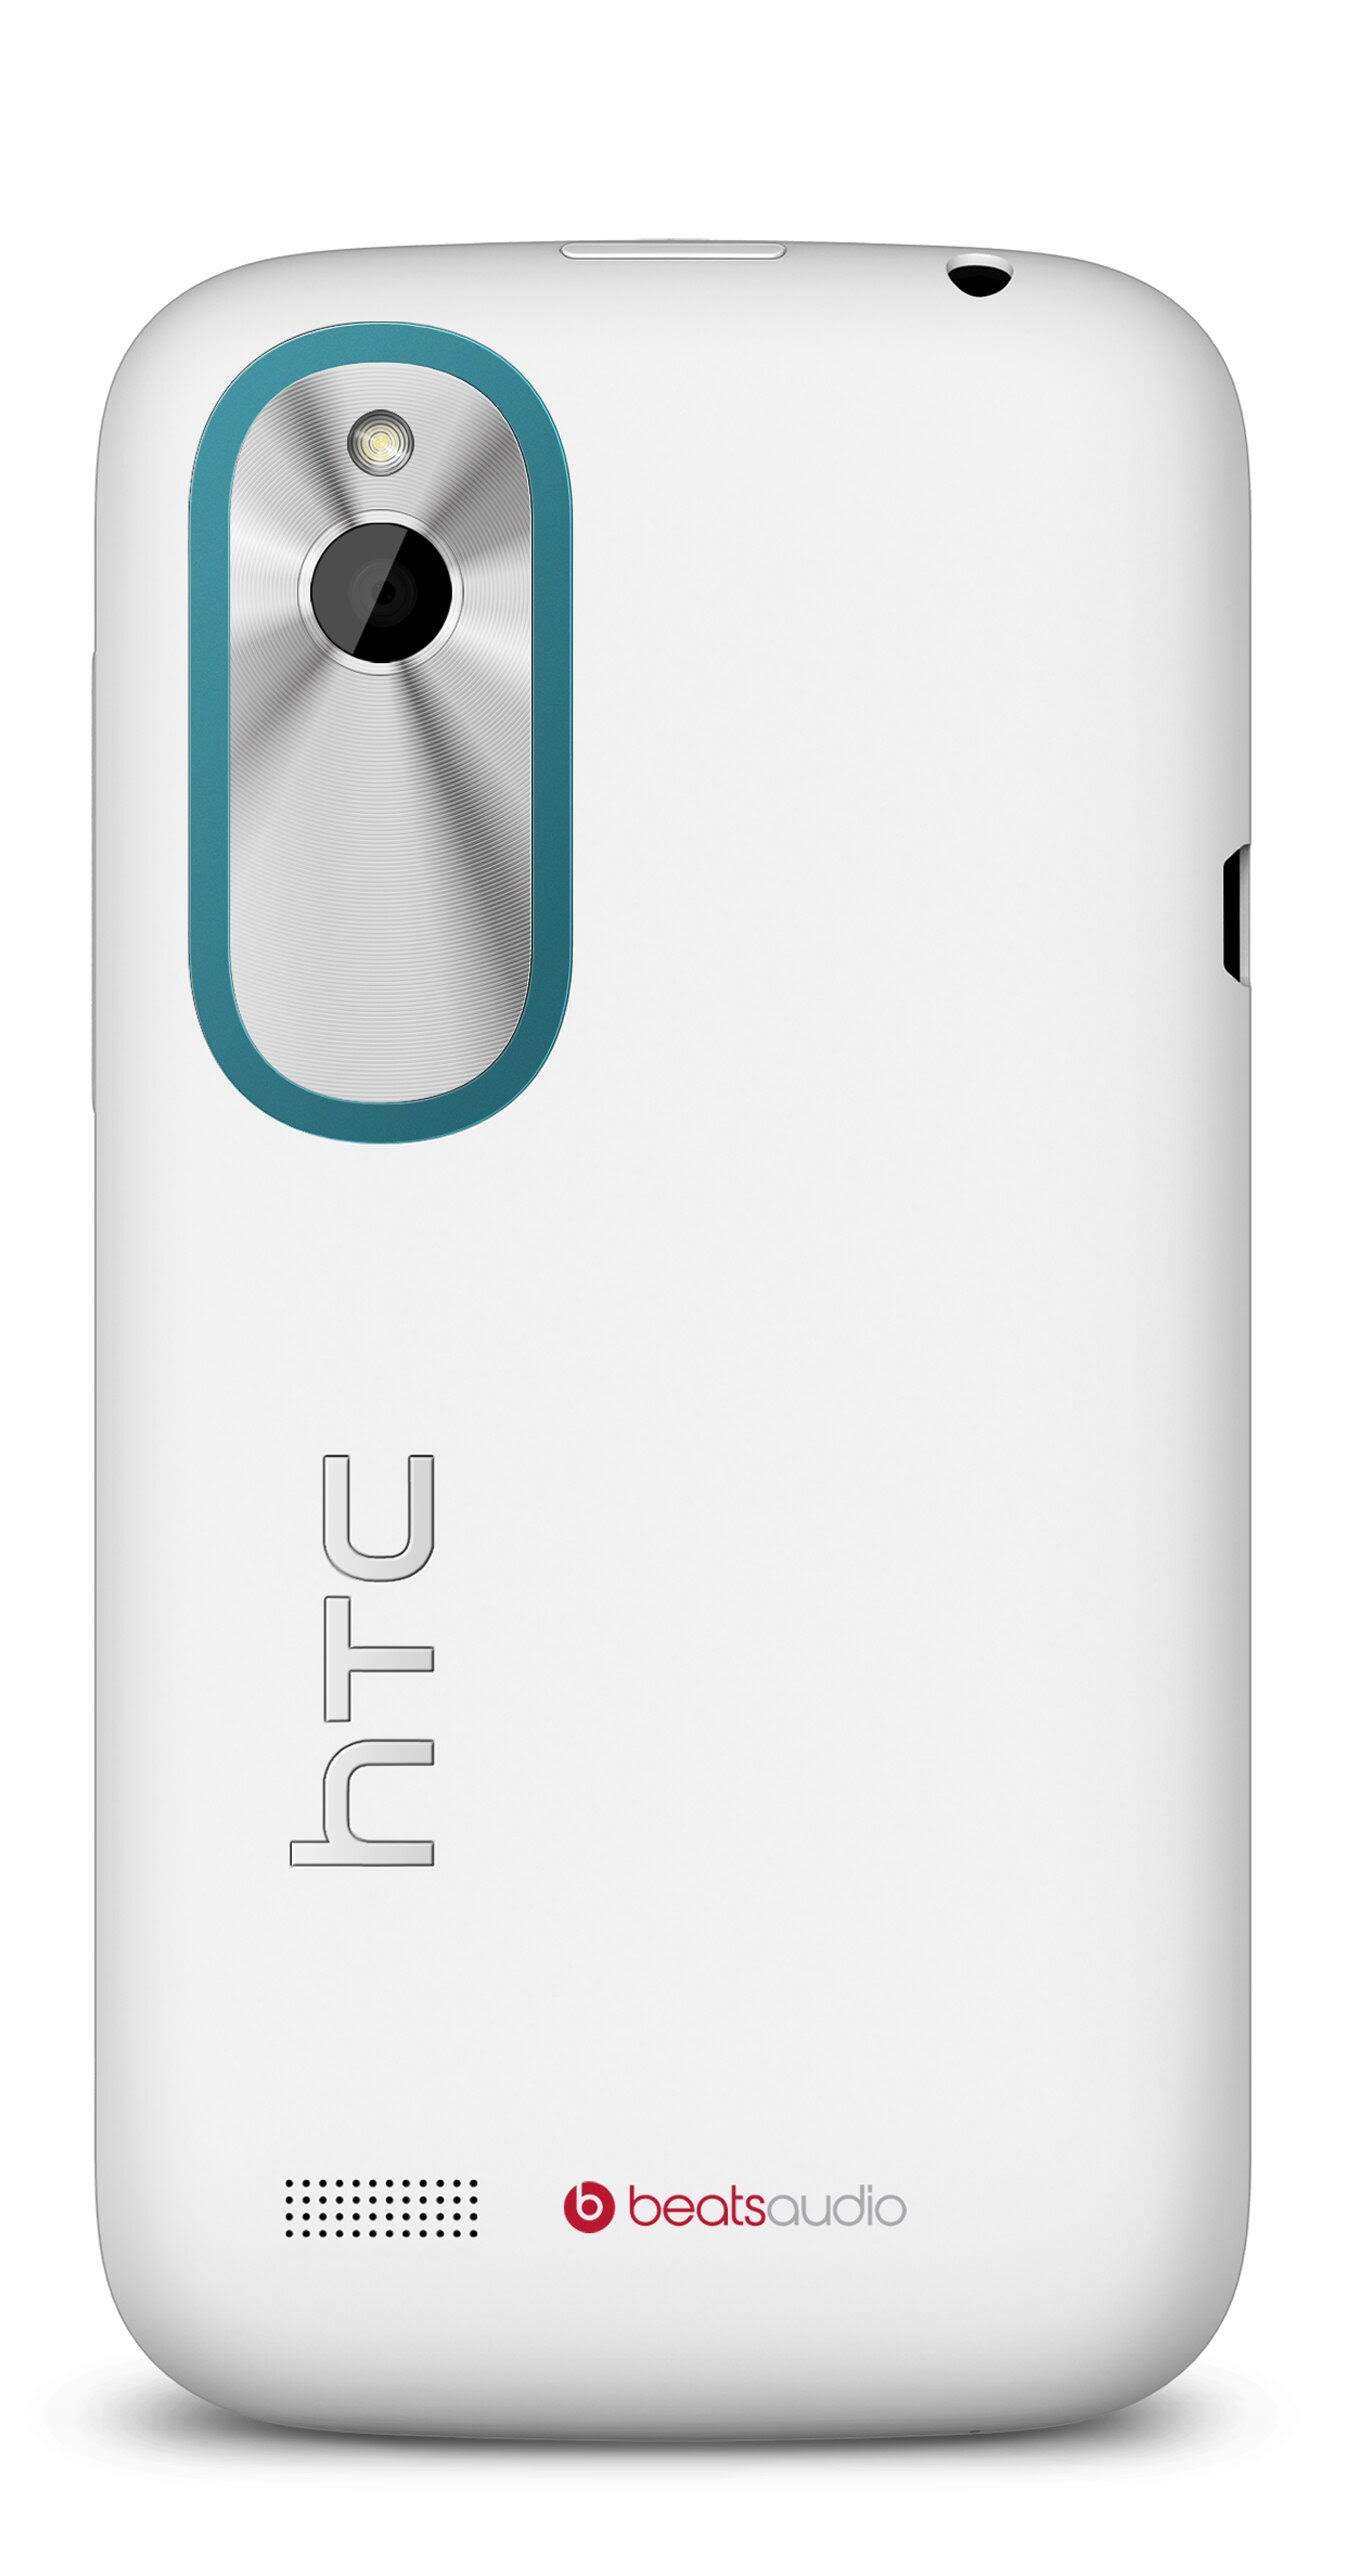 HTC Desire X - Especificaciones y caracter sticas